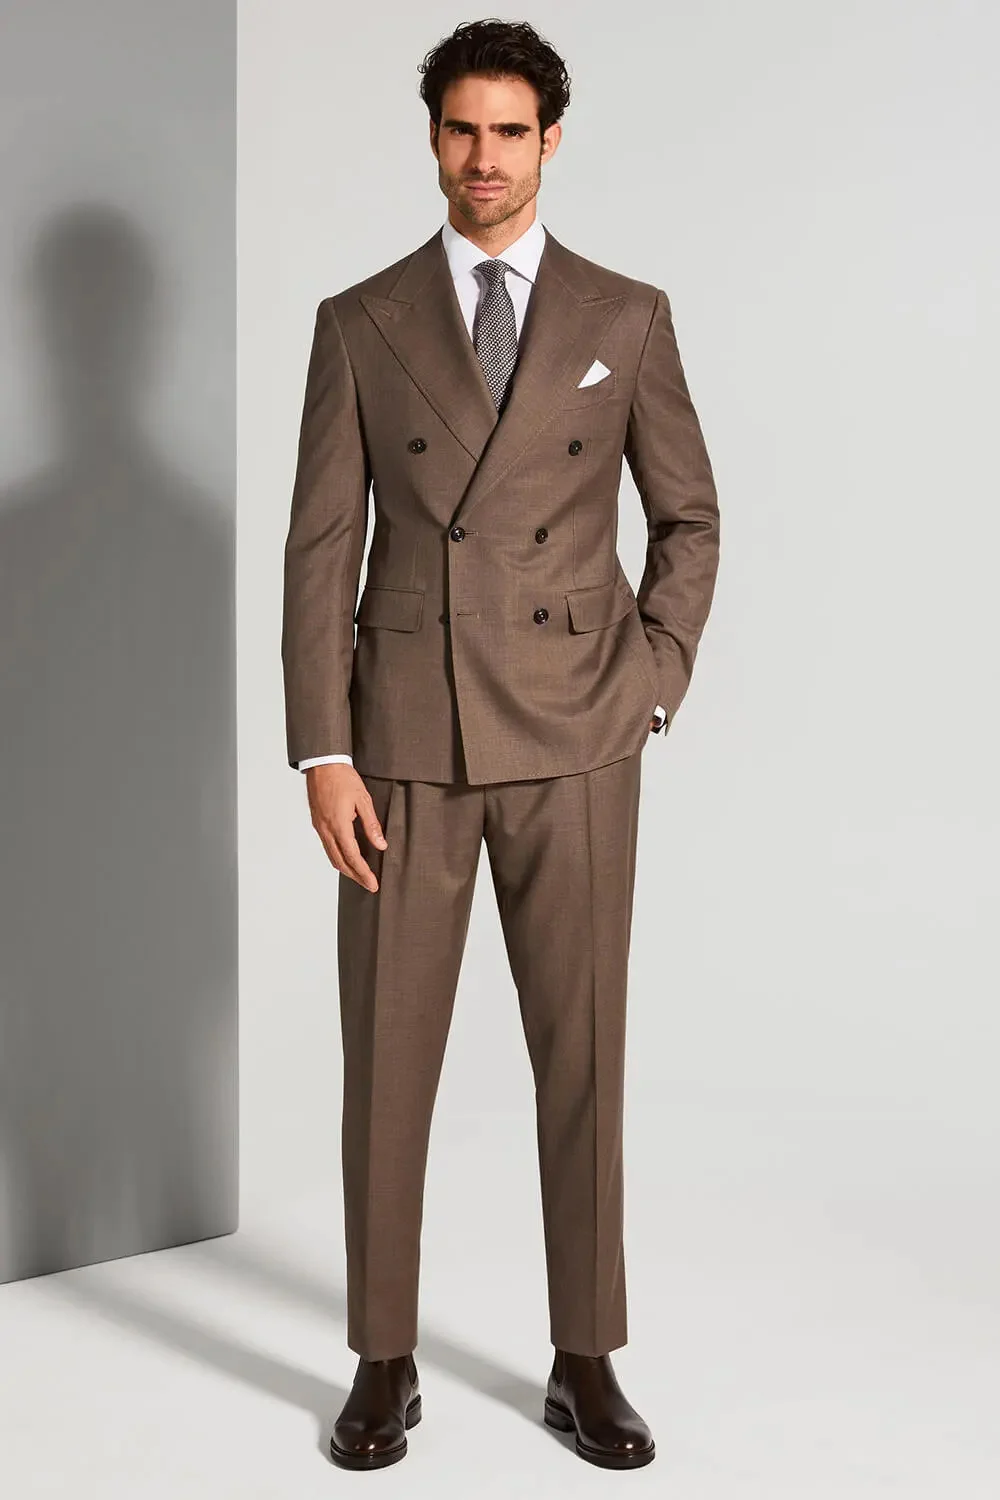 Customized Men's Suit Retro Gentleman Brown Men's Business Banquet Groomsmen Suit Jacket + Pants